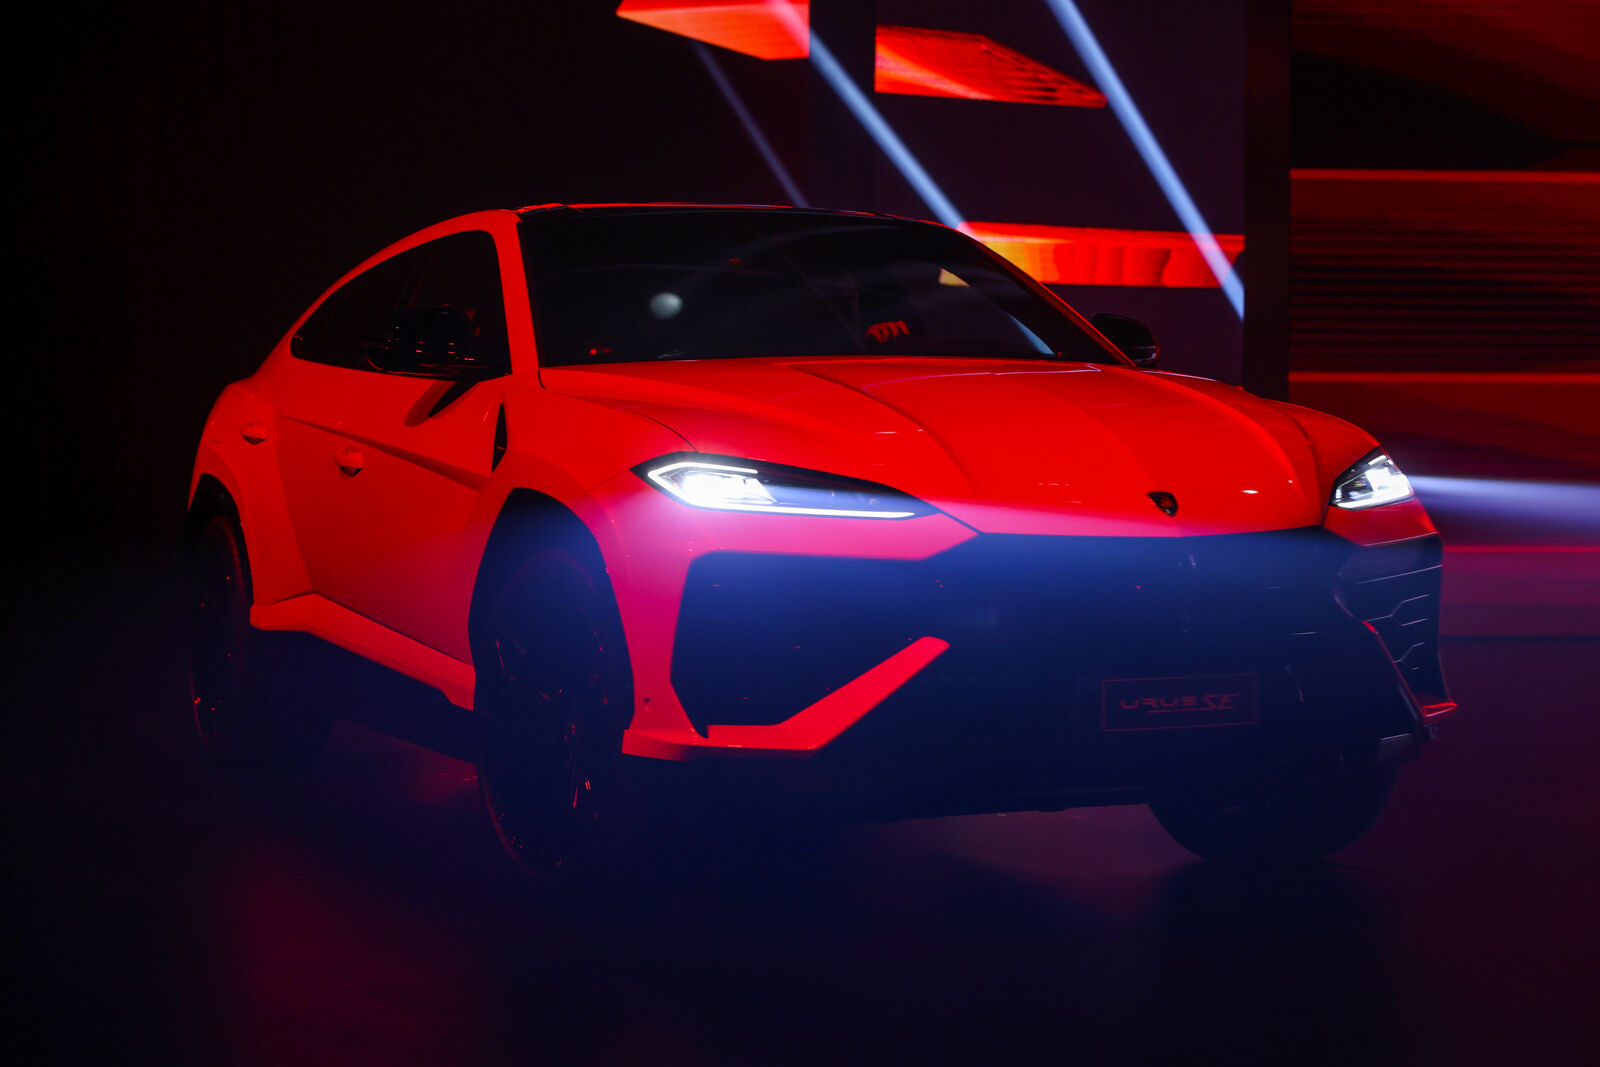 Ein knallroter Lamborghini Urus S SUV wird dramatisch auf der Bühne beleuchtet, mit schwarzem Hintergrund und betont durch leuchtend rote Beleuchtung.